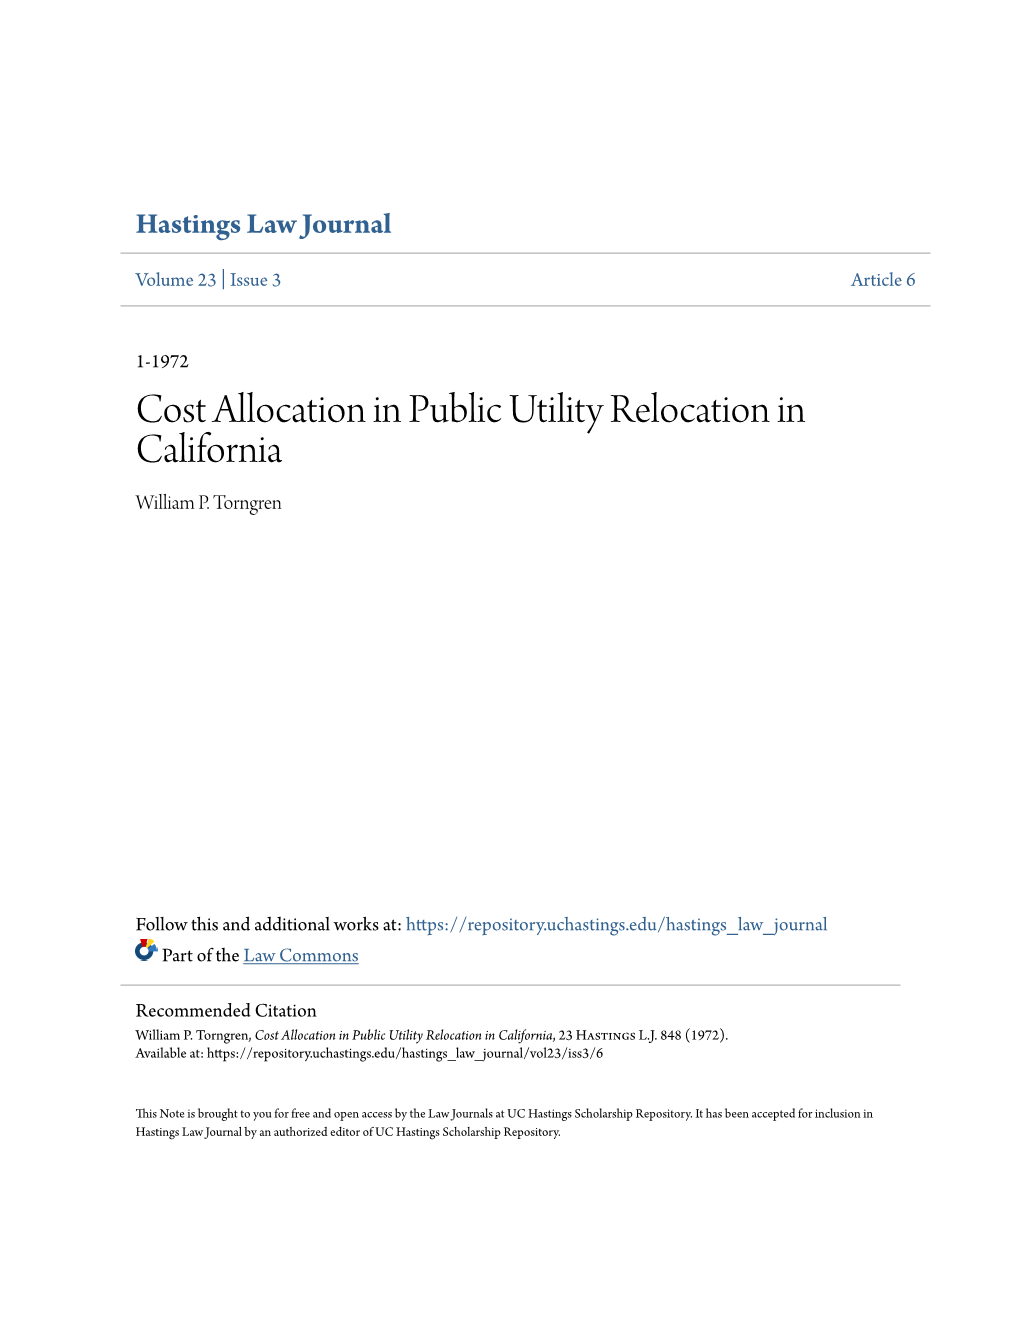 Cost Allocation in Public Utility Relocation in California William P